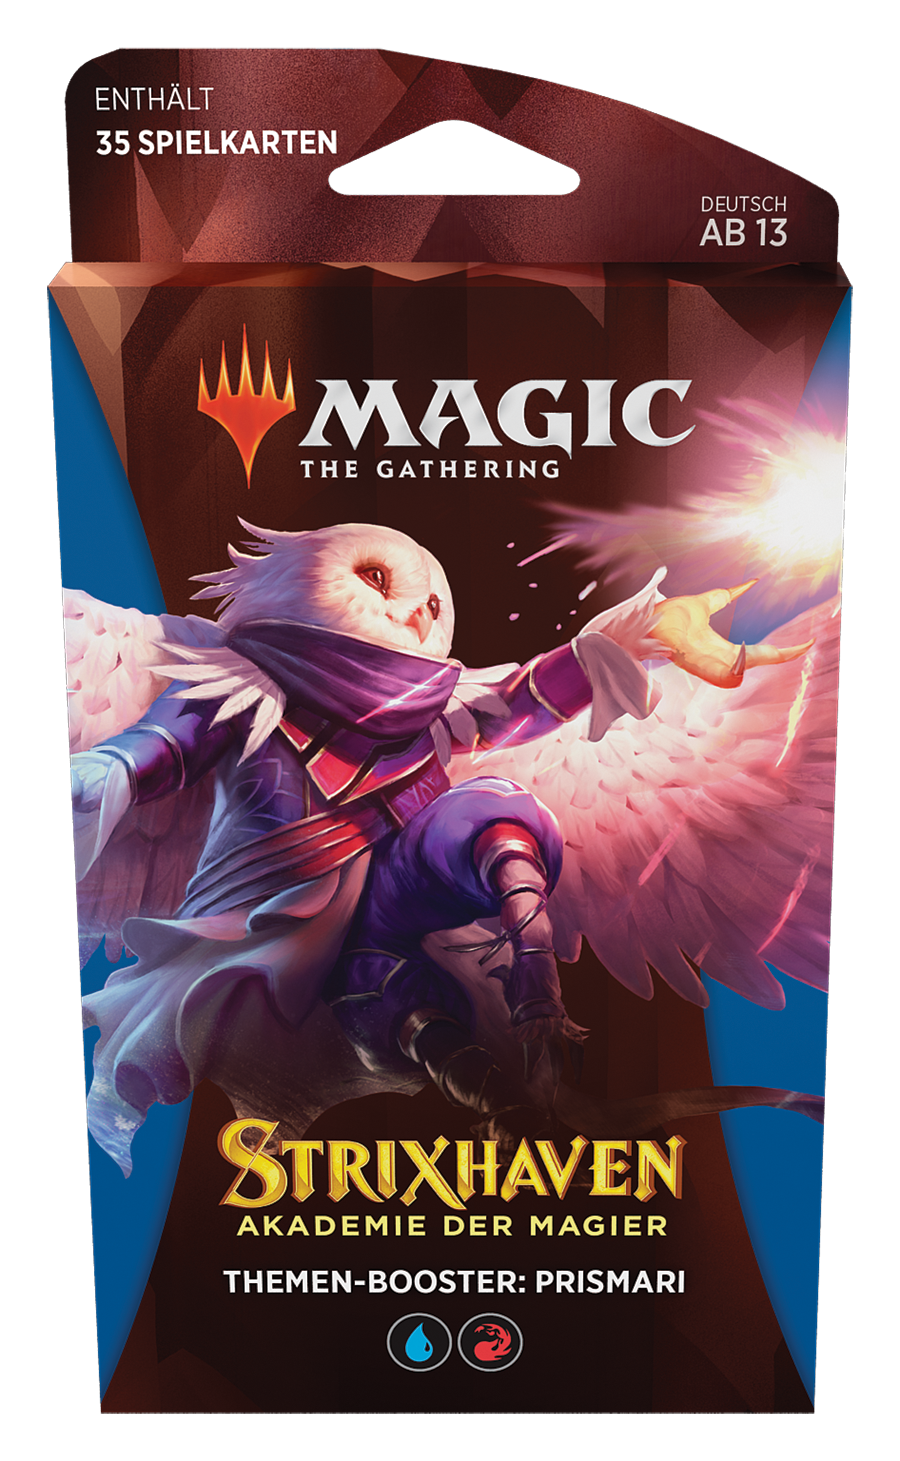 Strixhaven: Akademie der Magier - Theme Booster Prismari deutsch